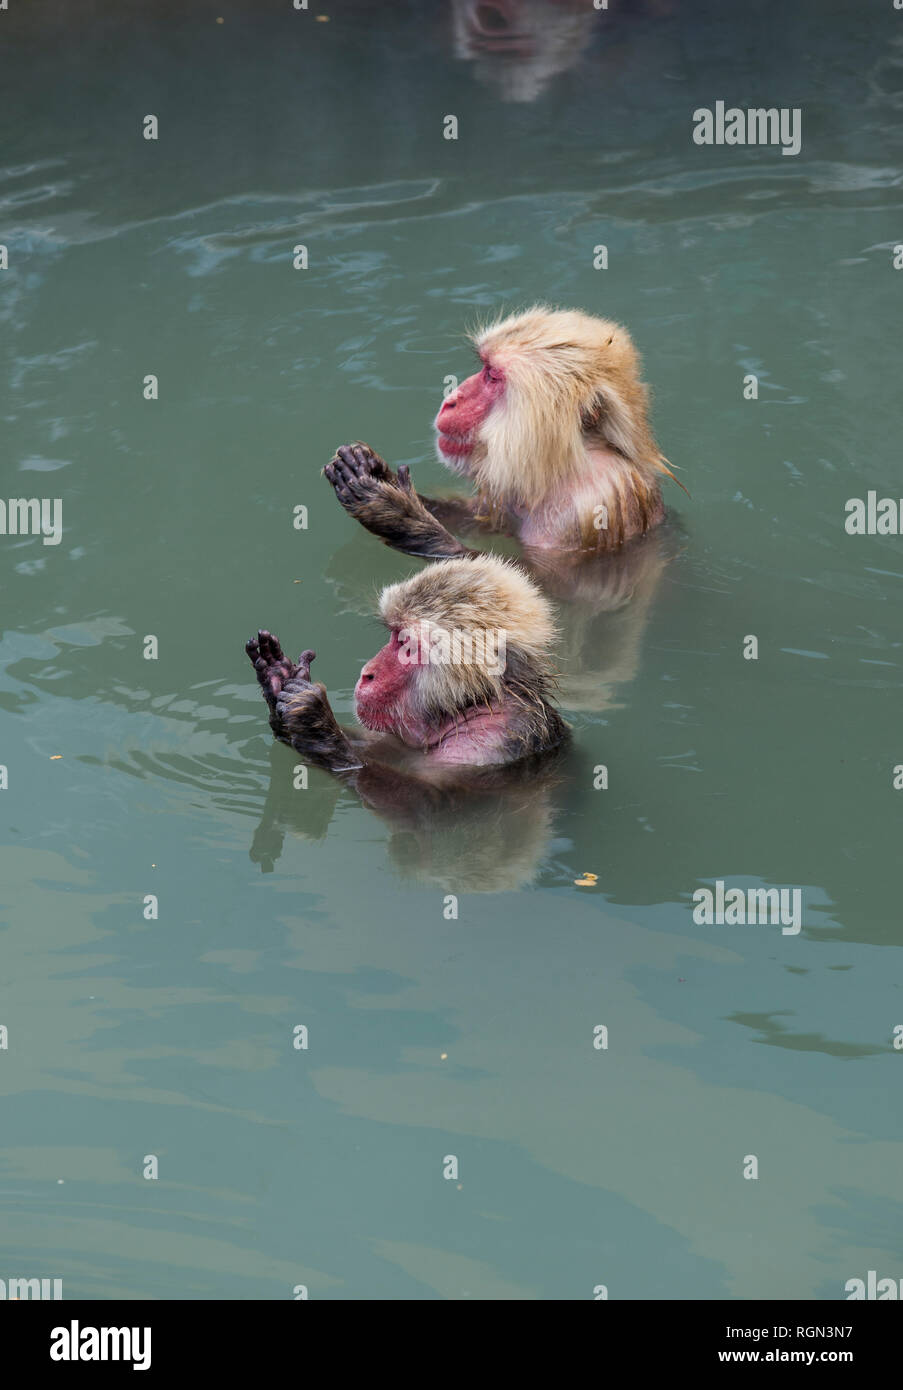 Hokkaido, Hakodate, red-faced makaks in water Stock Photo